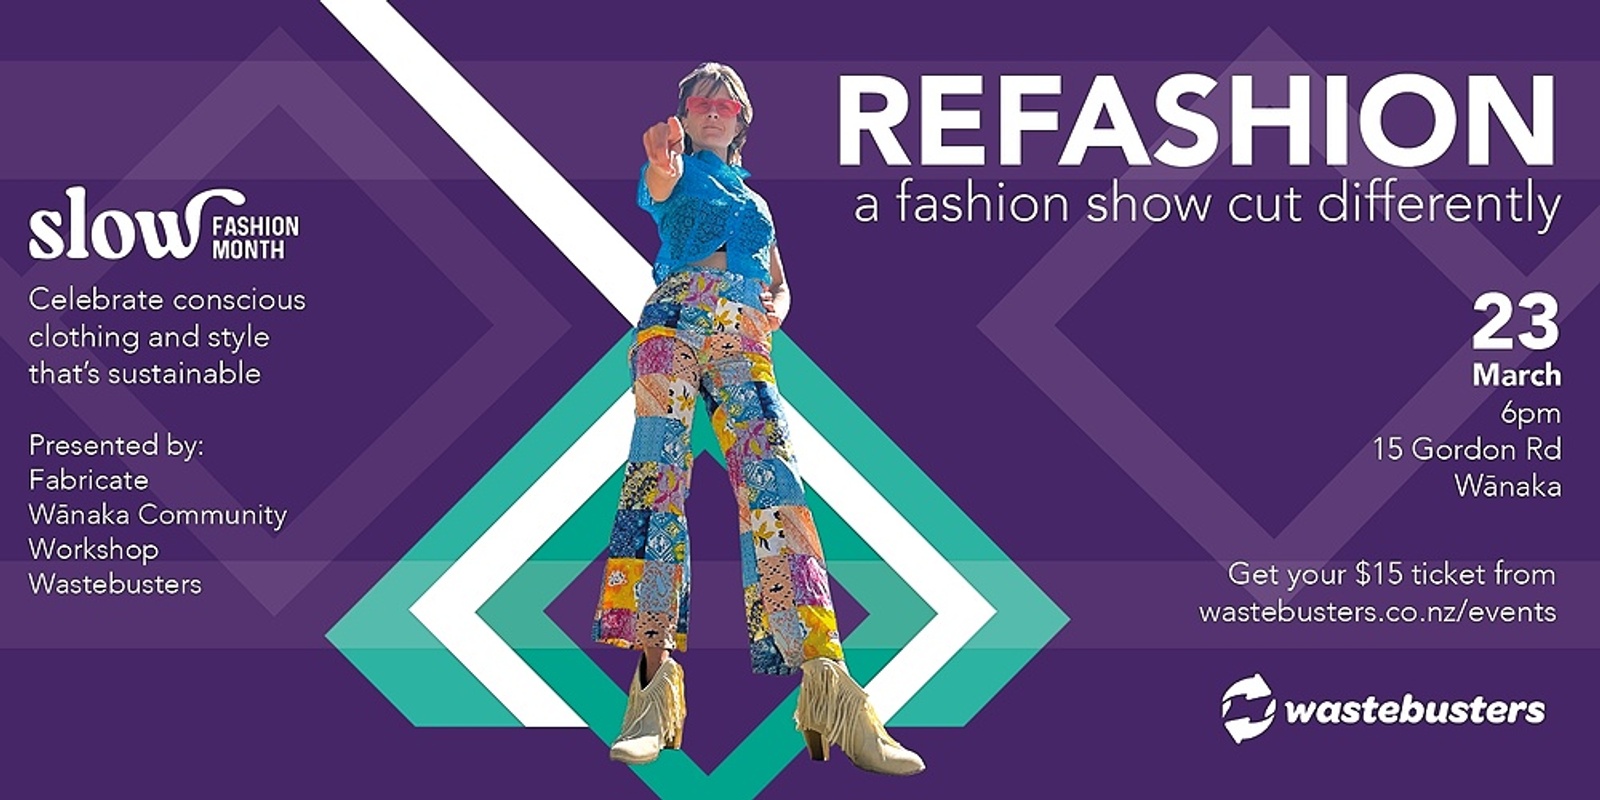 REFASHION - A Fashion Show Cut Differently